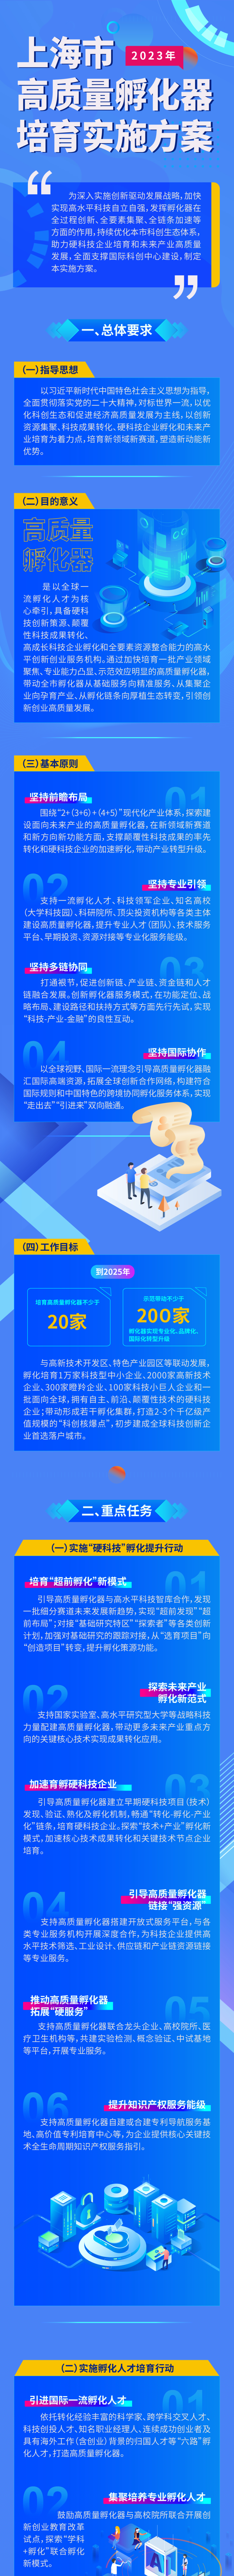 【图文解读】《上海市高质量孵化器培育实施方案》.png